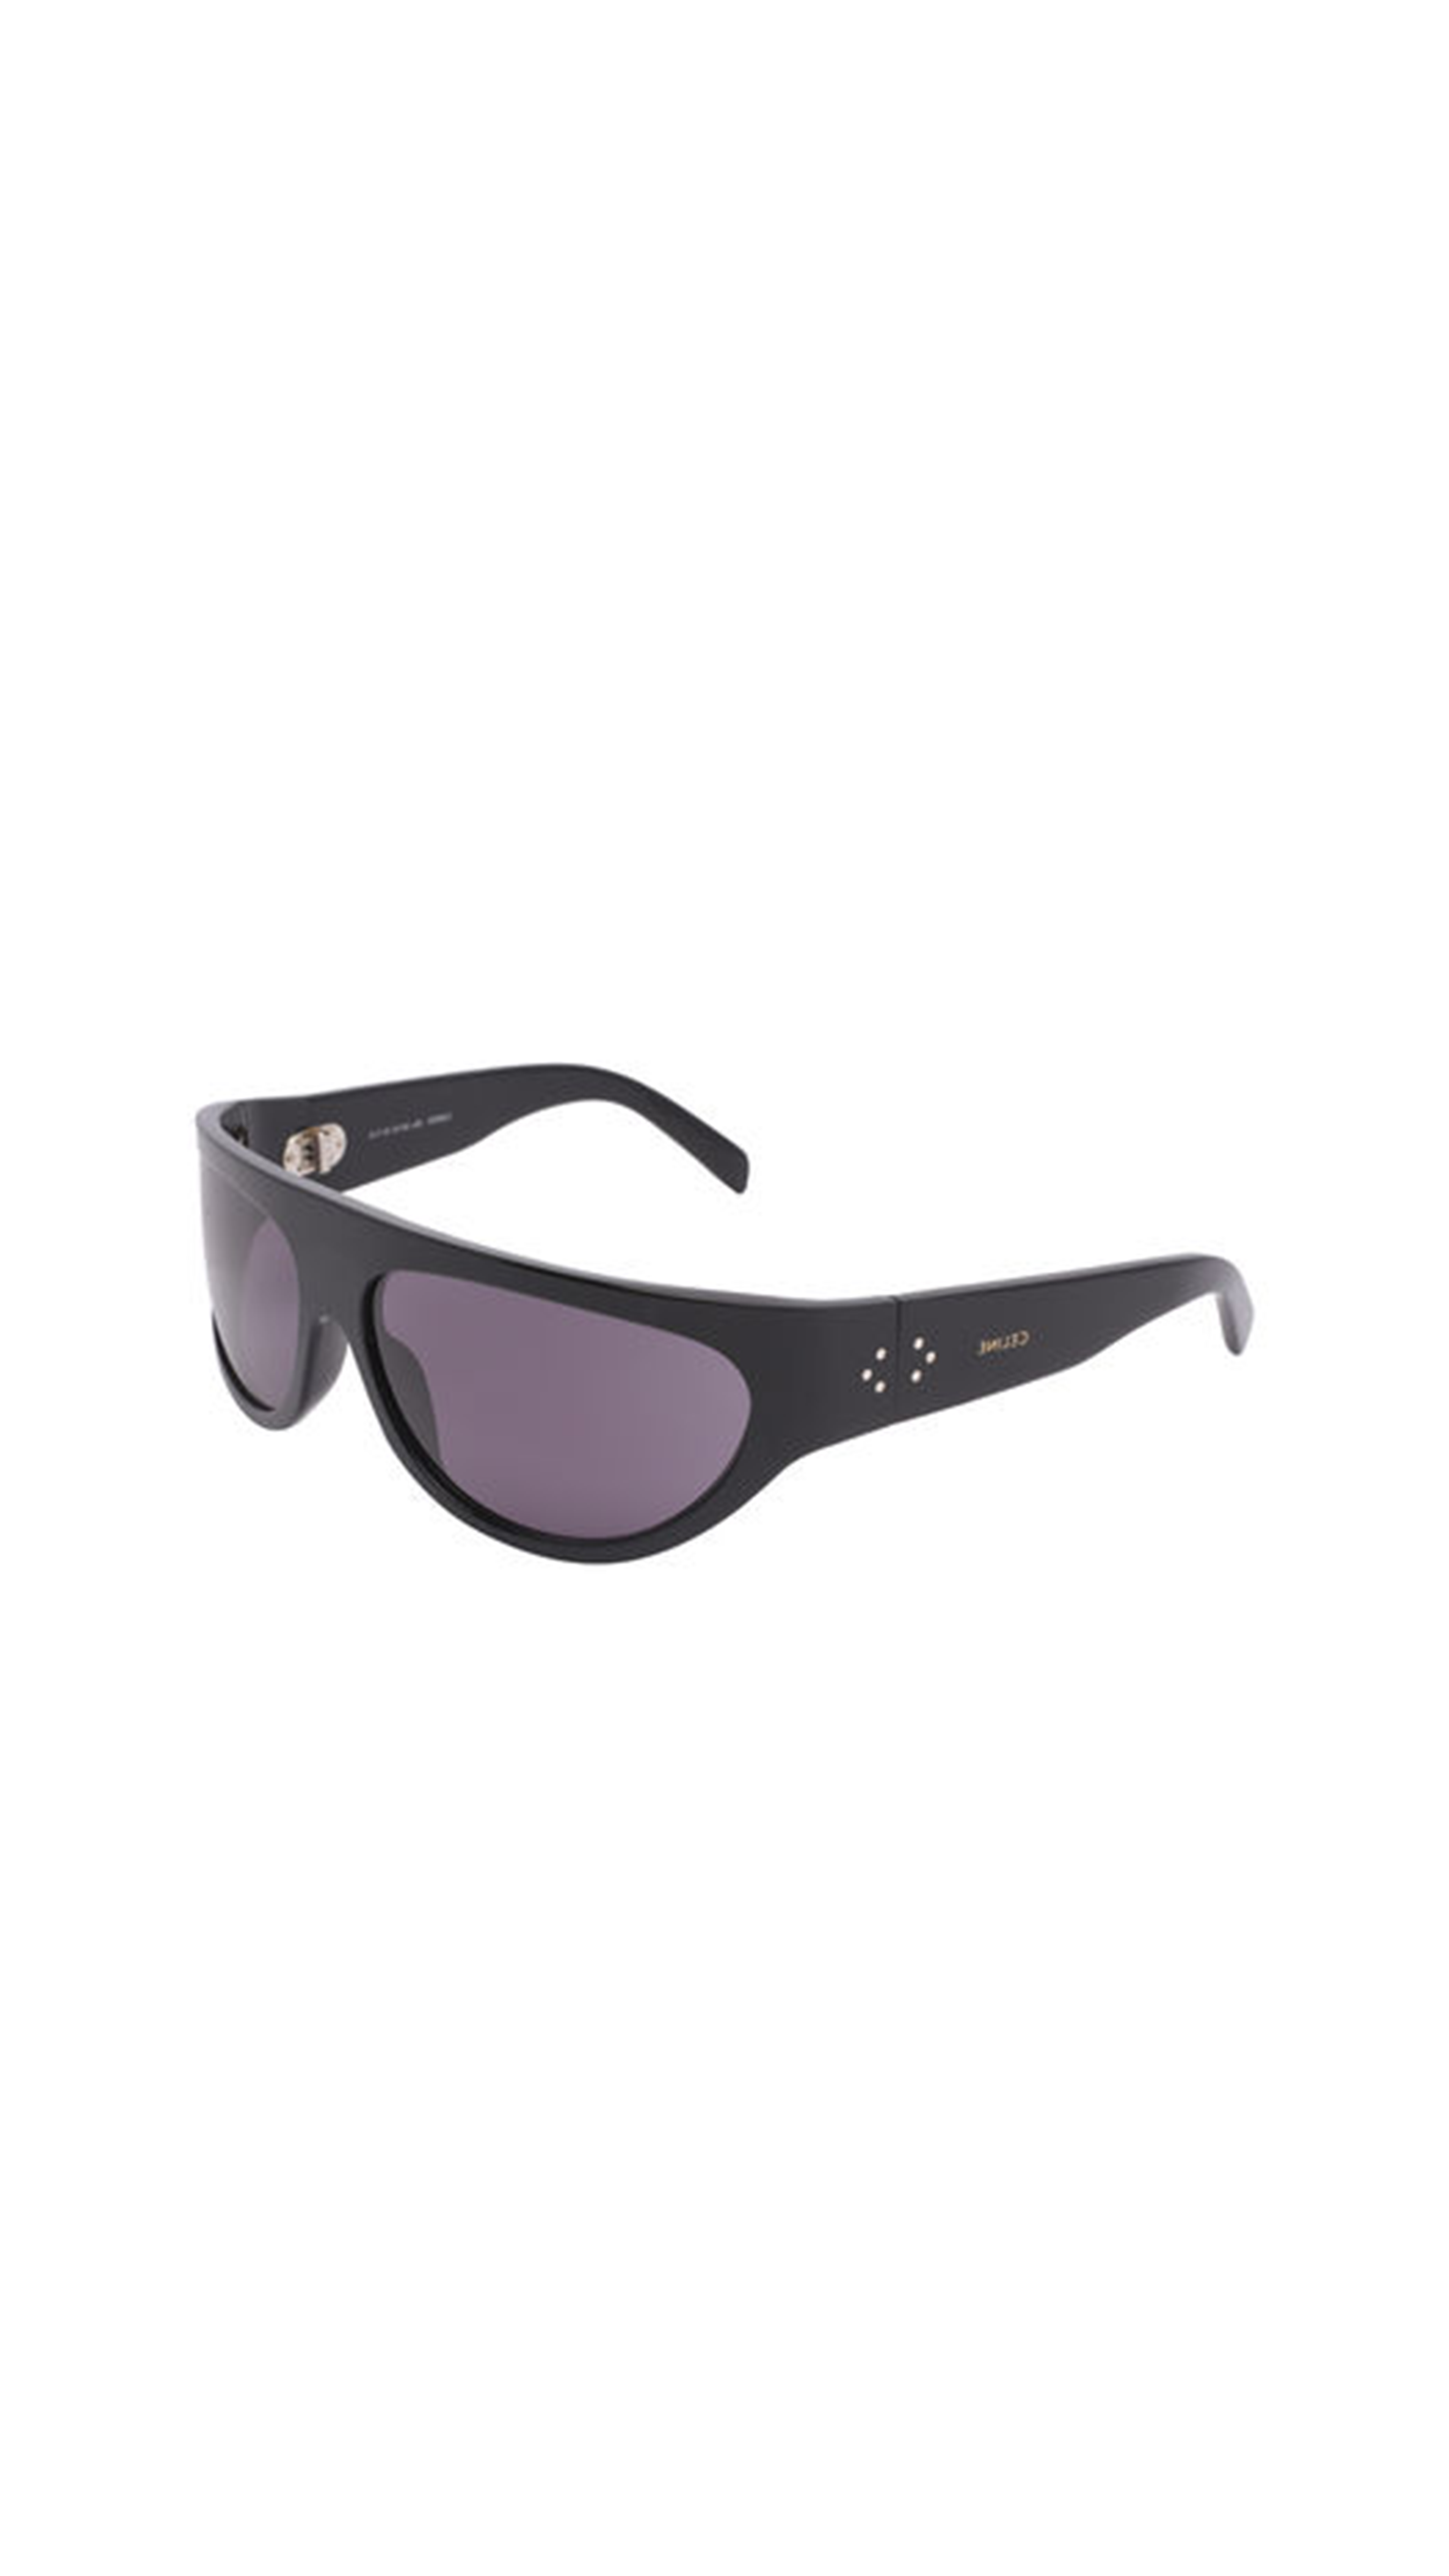 Alan 1 Sunglasses in Acetate - Black